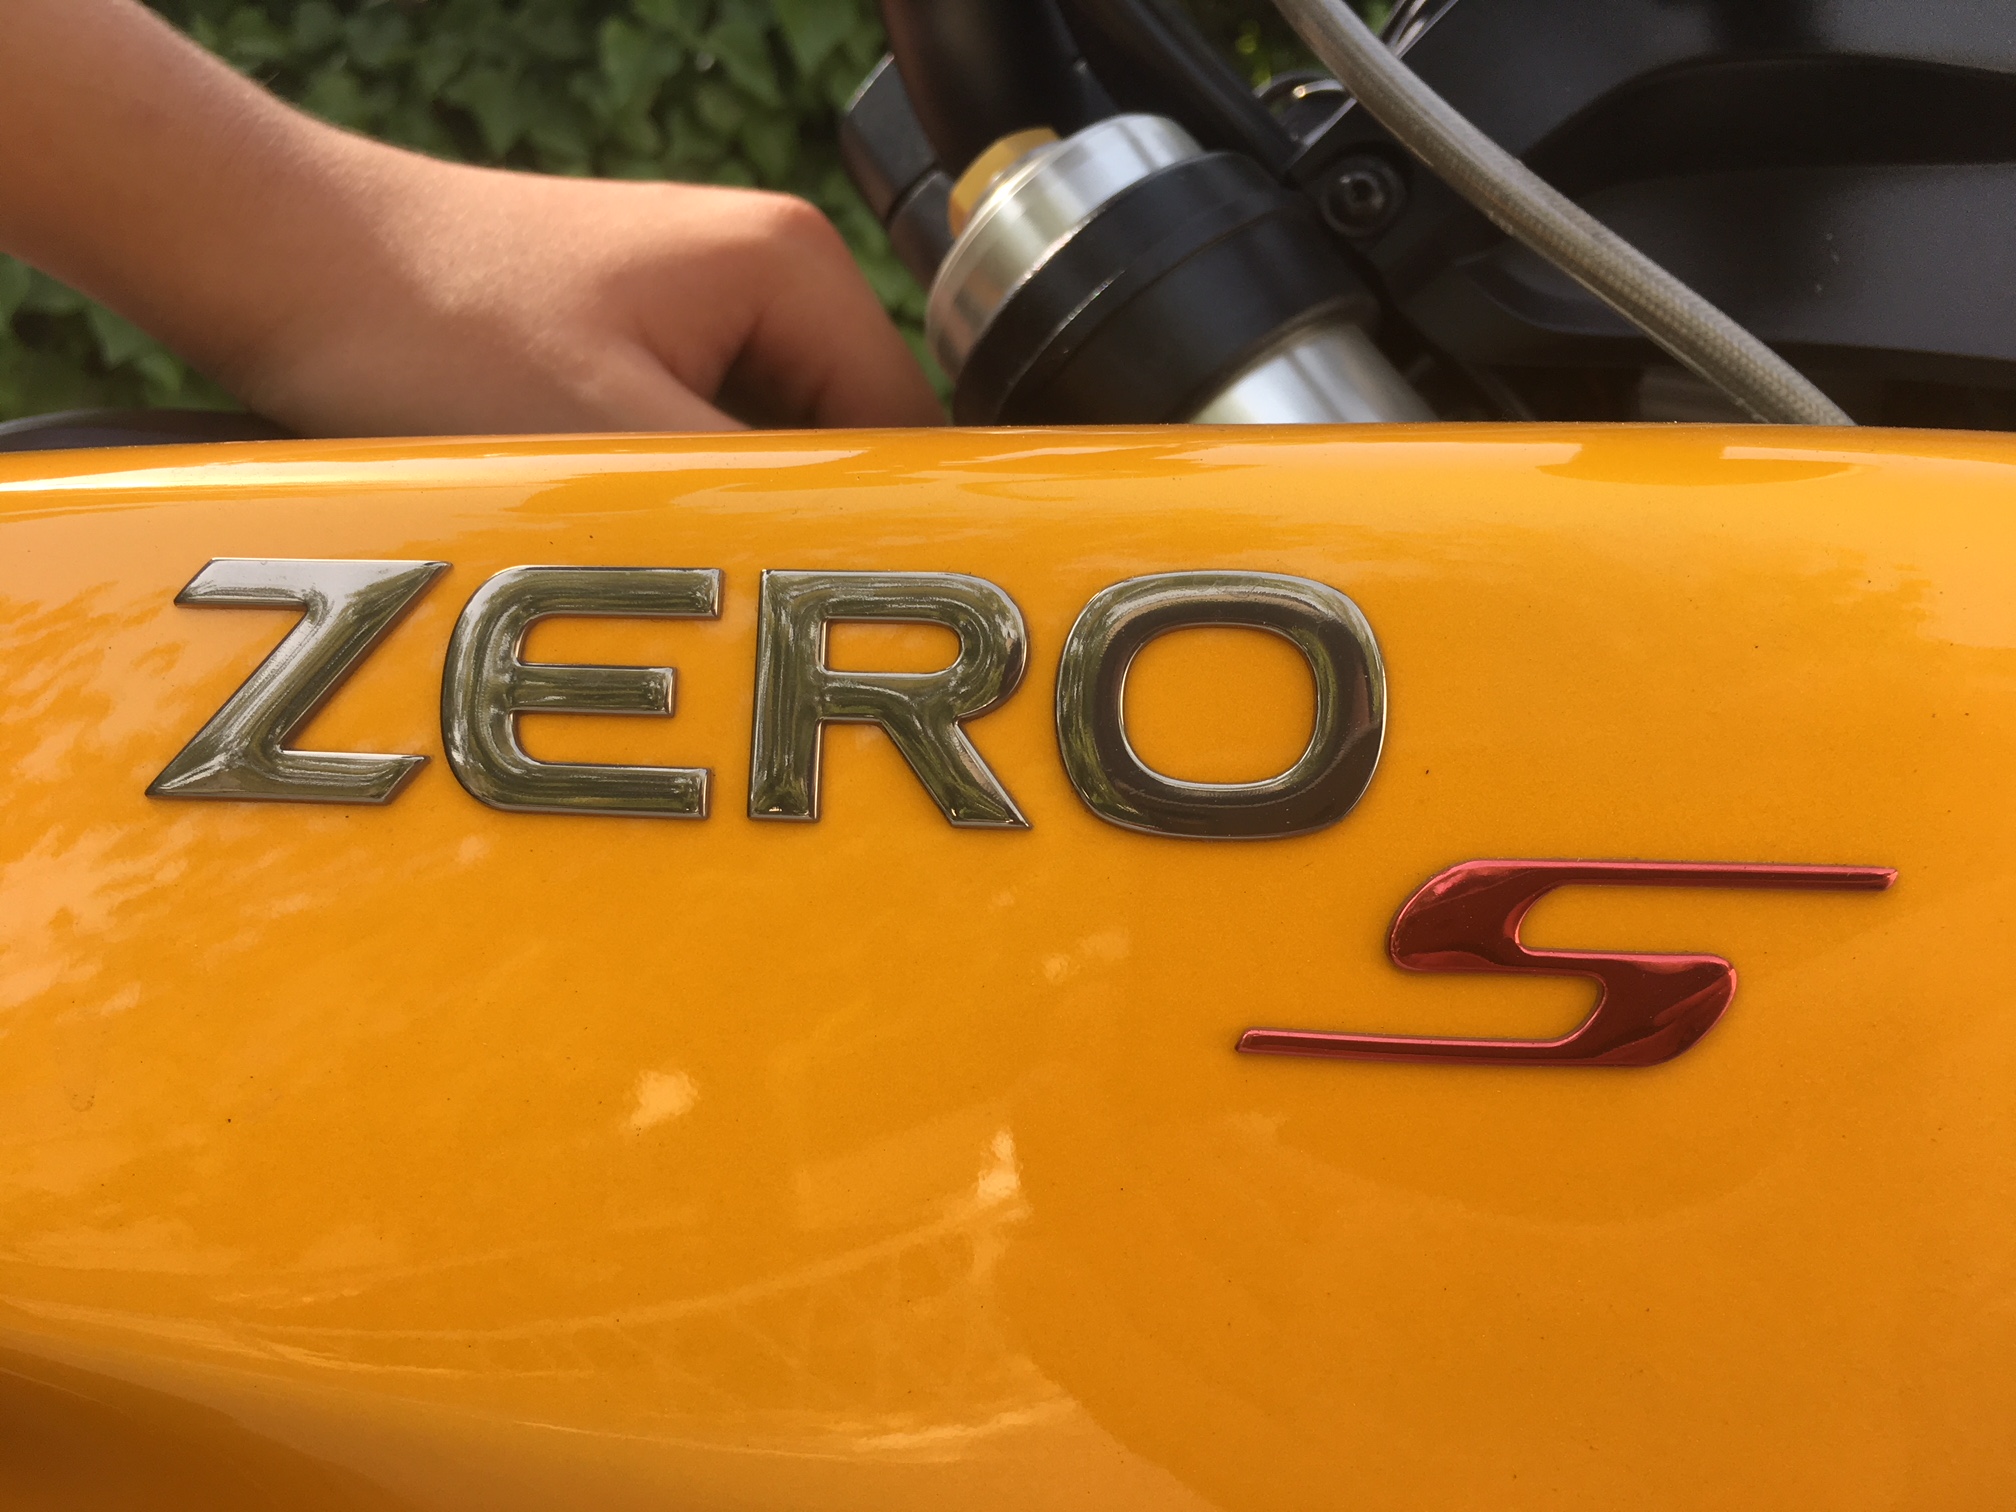 Zero S